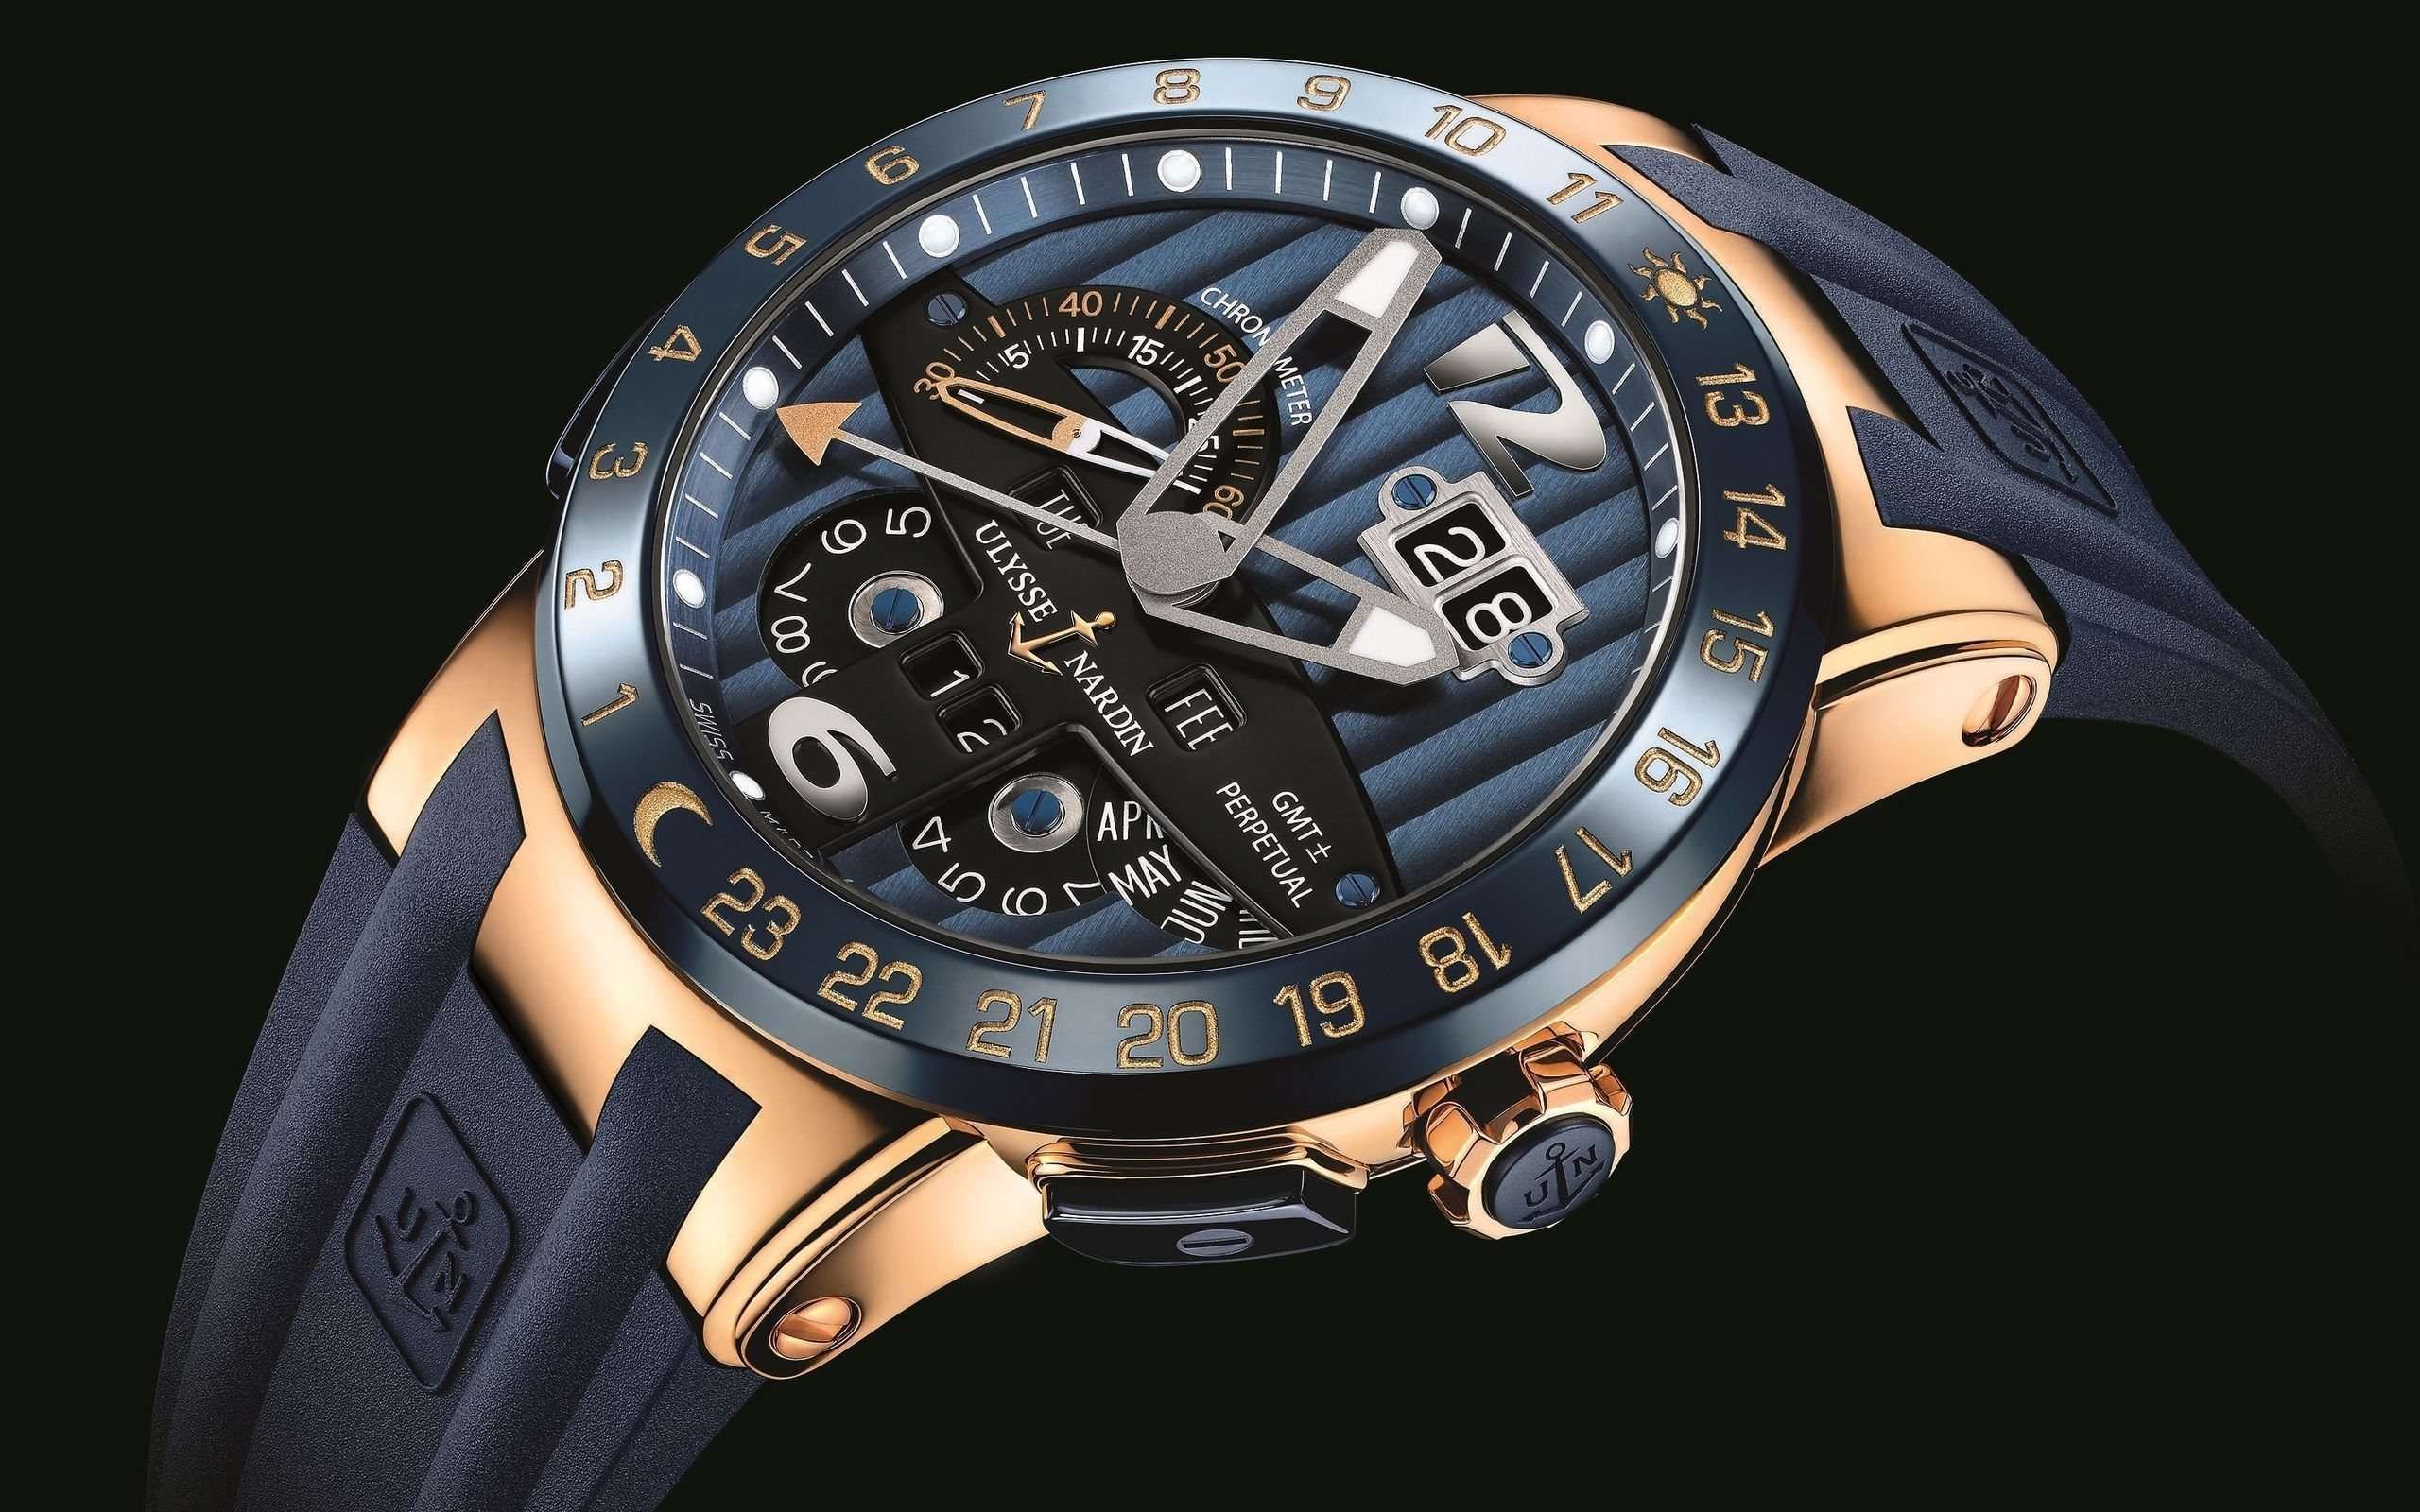 2560x1600 Ulysse Nardin Watch Wallpaper Hd 2560 1600 Luxury Watches For Men Swiss Watches For Men Watches